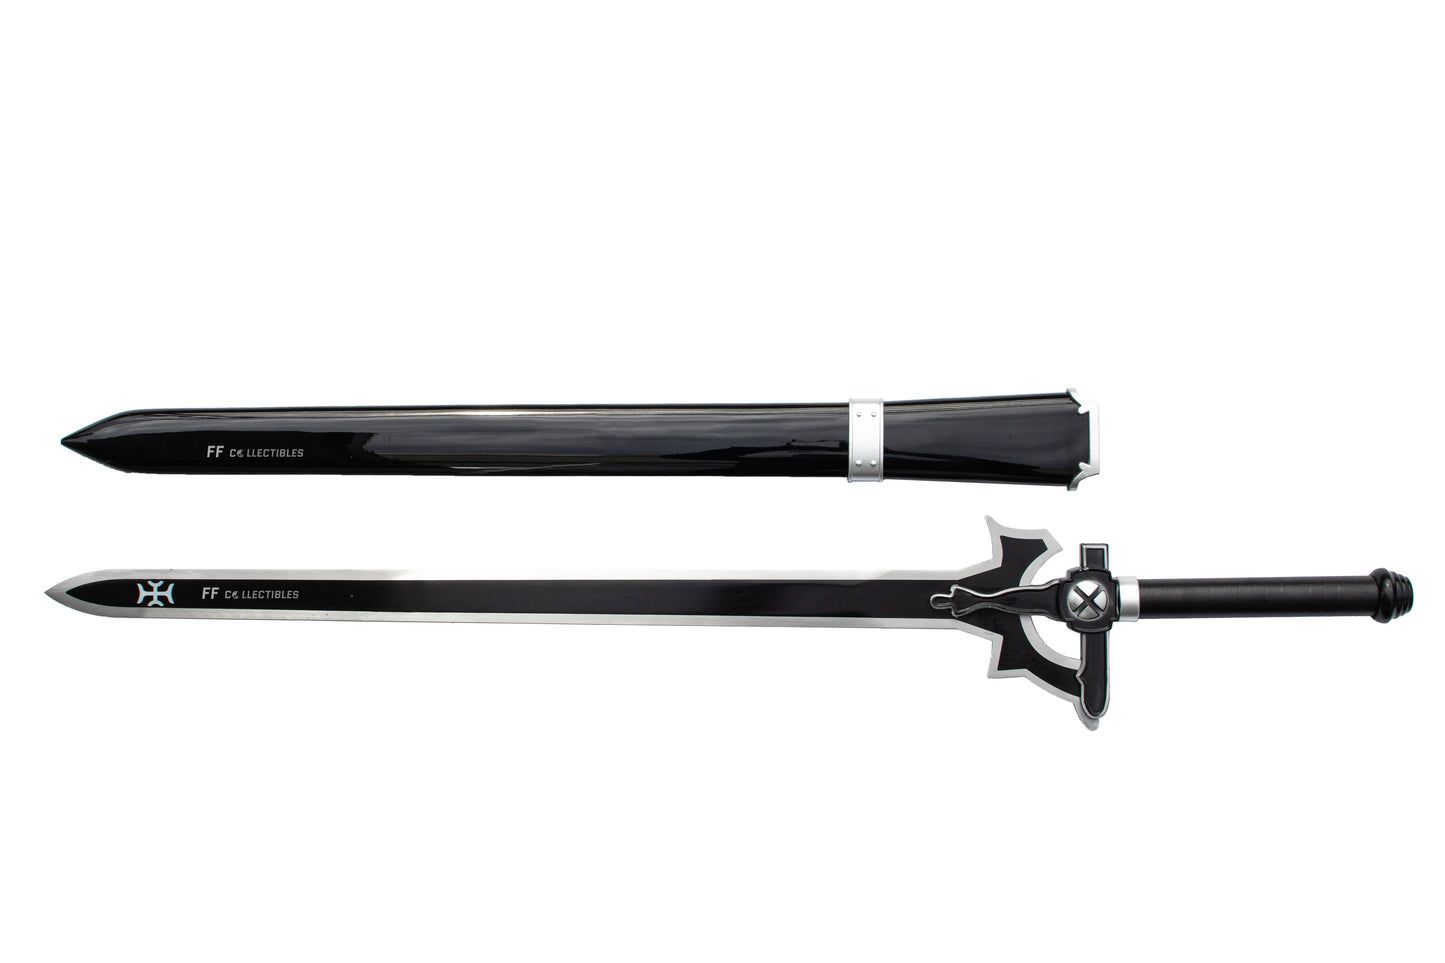 SWORD ART ONLINE - KIRITO'S SWORD, THE ELUCIDATOR (w FREE sword stand)